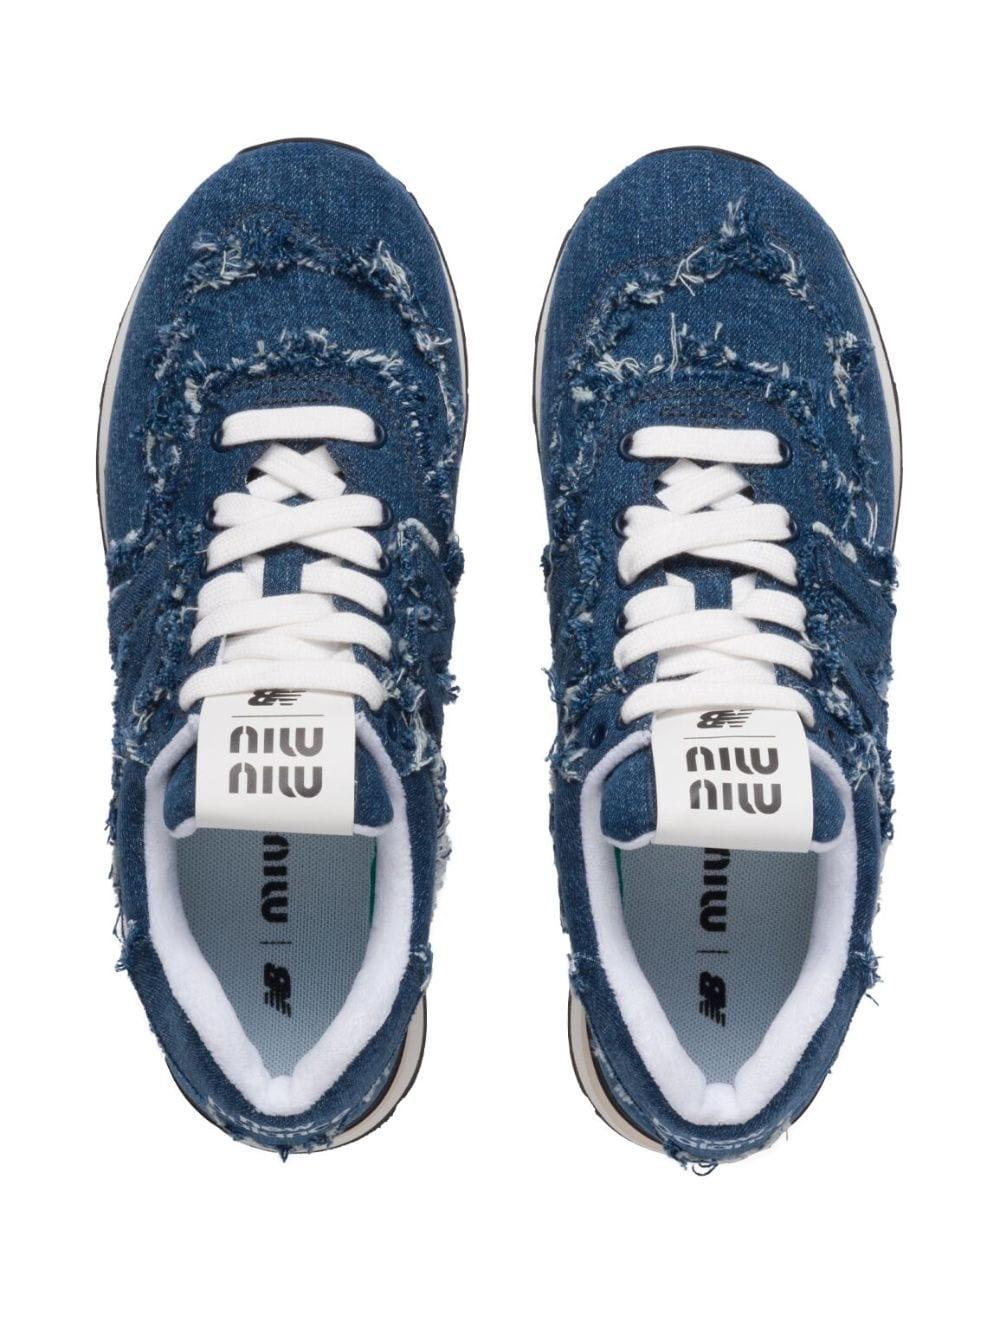 Miu Miu X New Balance 574 Denim Sneakers in Blue | Lyst